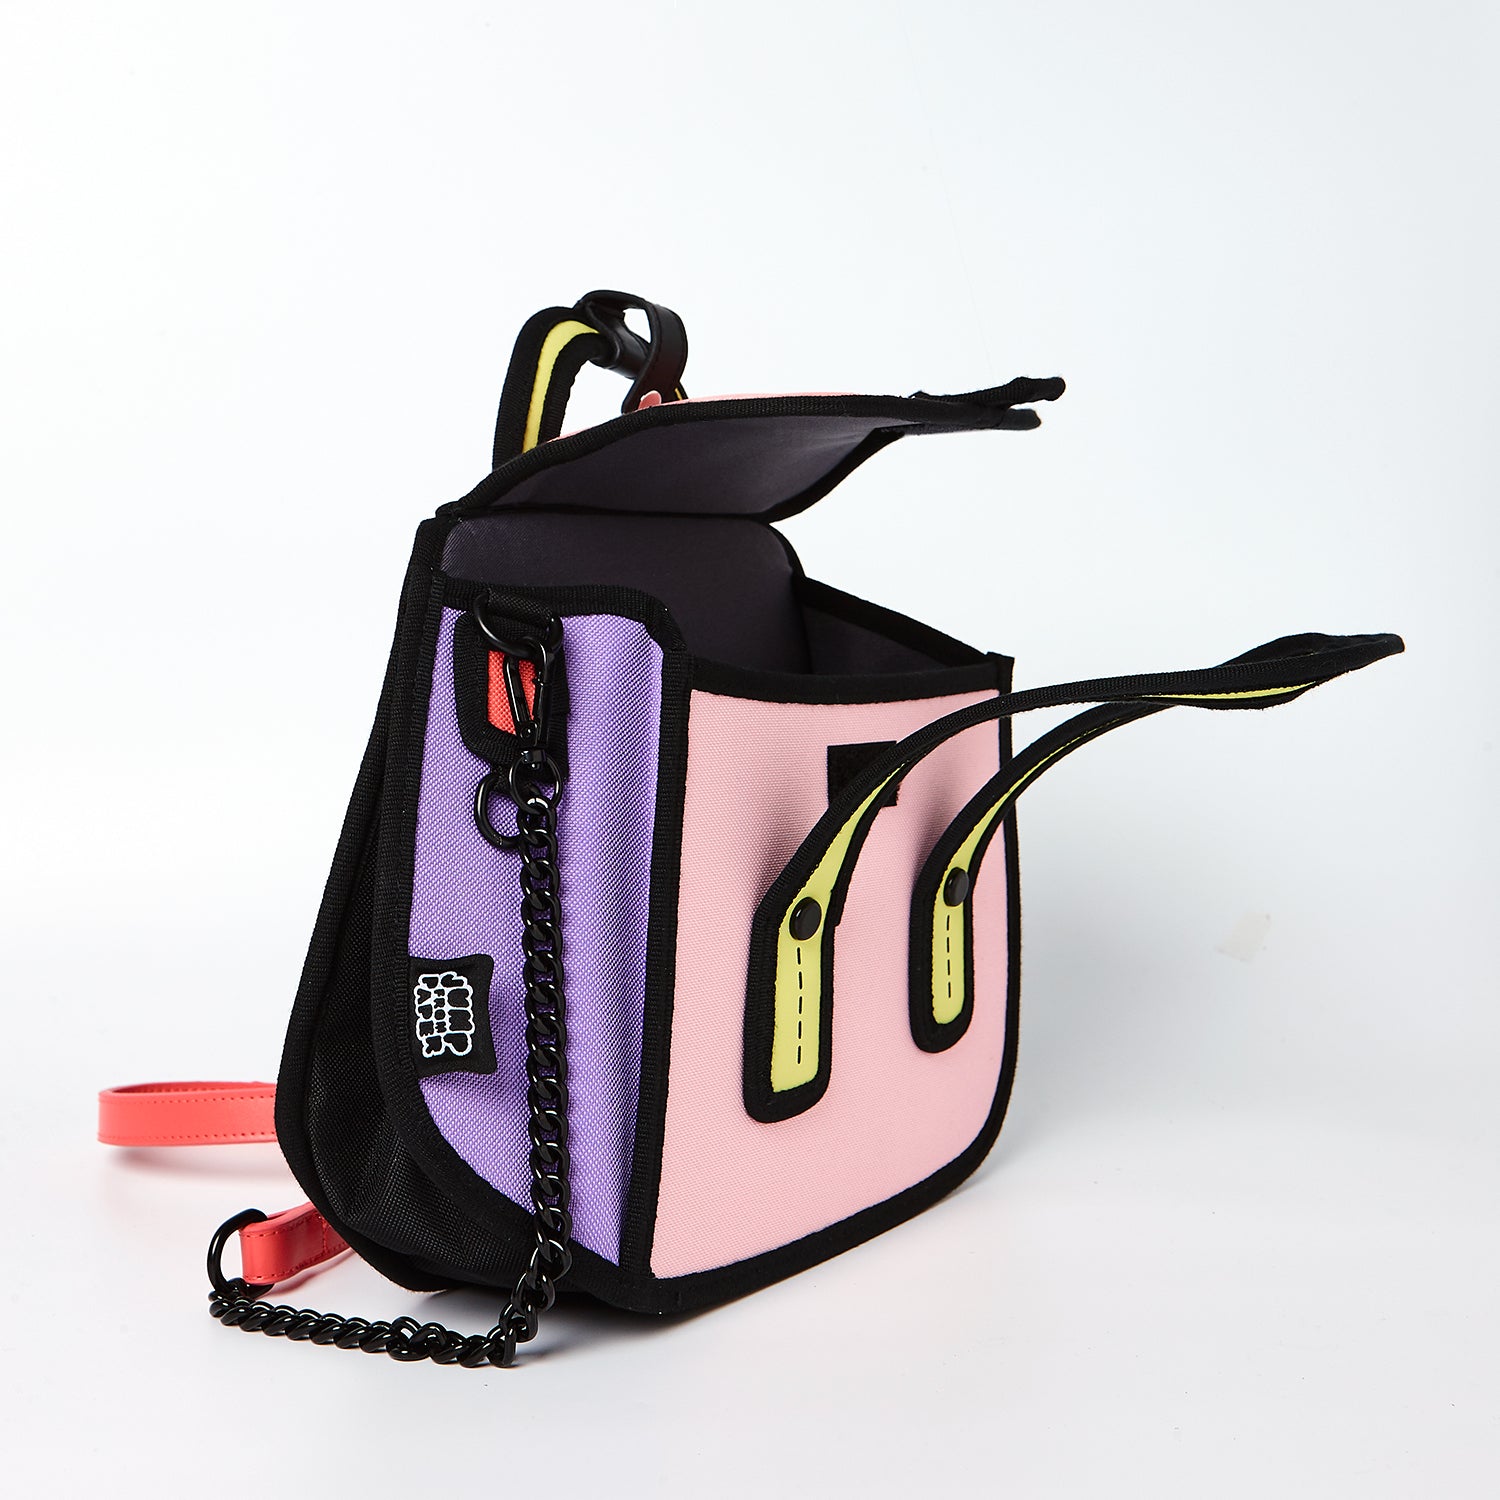 Pink Owl bag / Metal Chain Bag